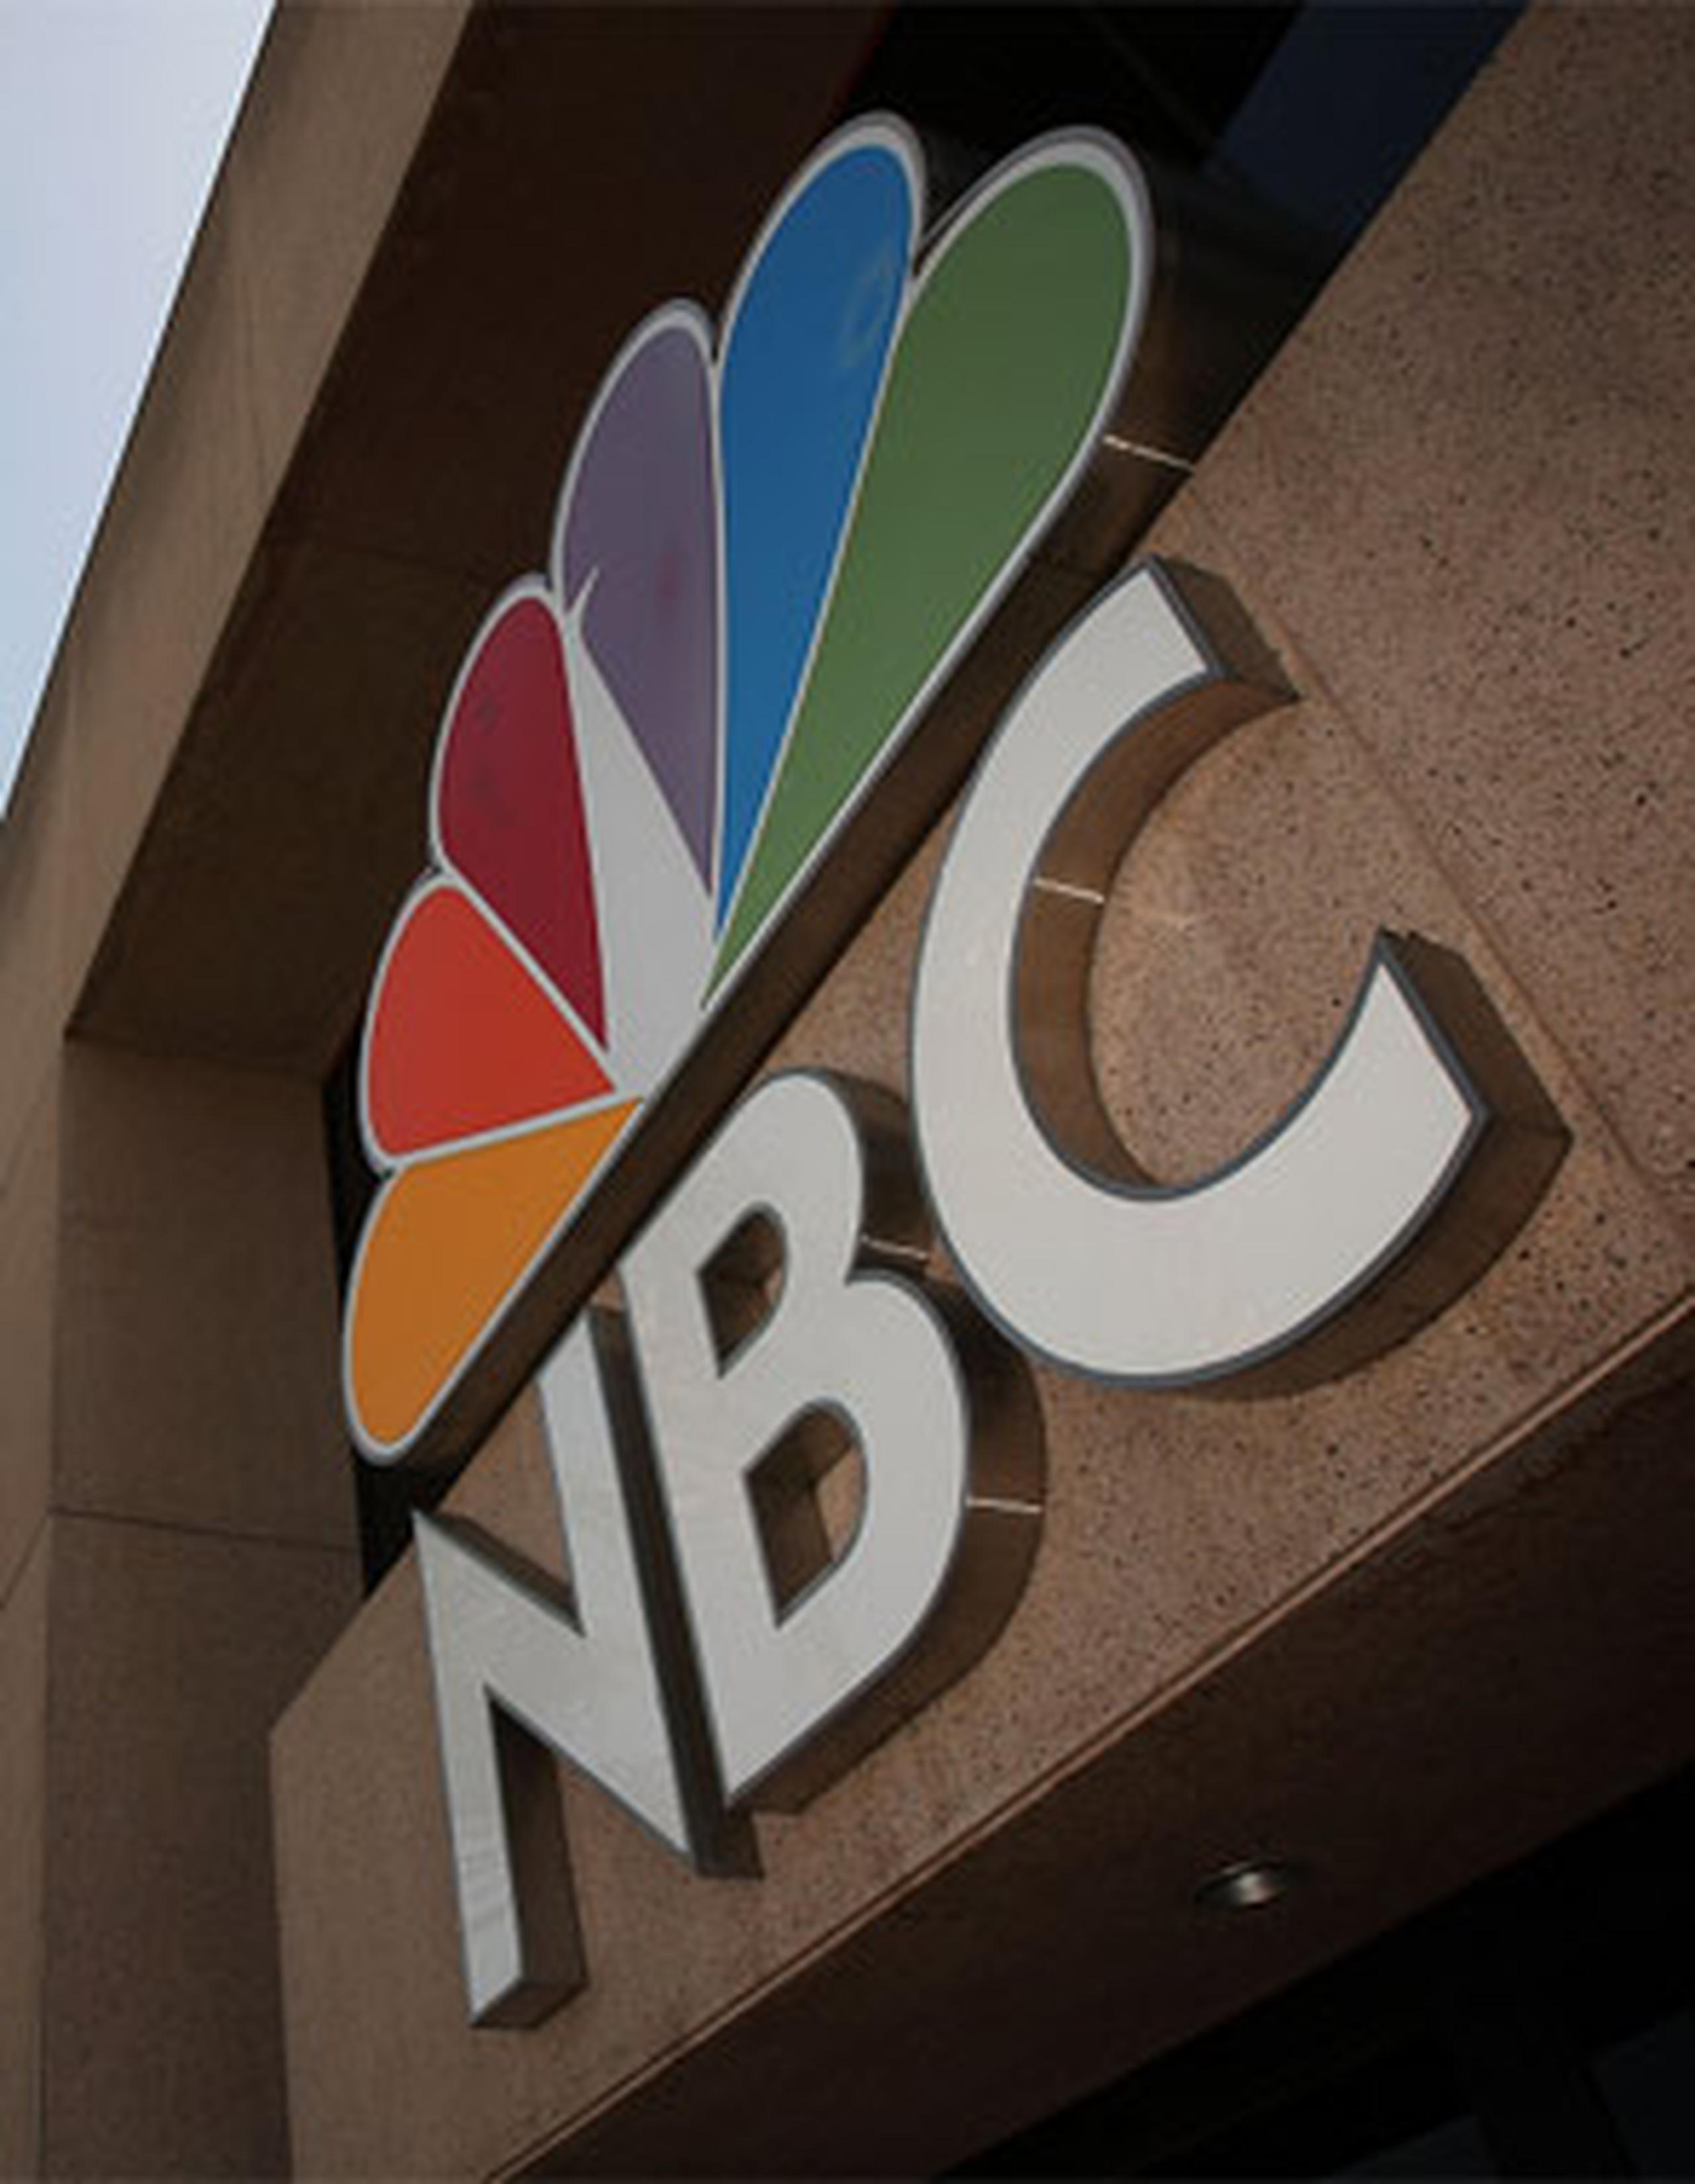 Desde ayer, Telemundo está a cargo de la señal de NBC en Puerto Rico. (Archivo)